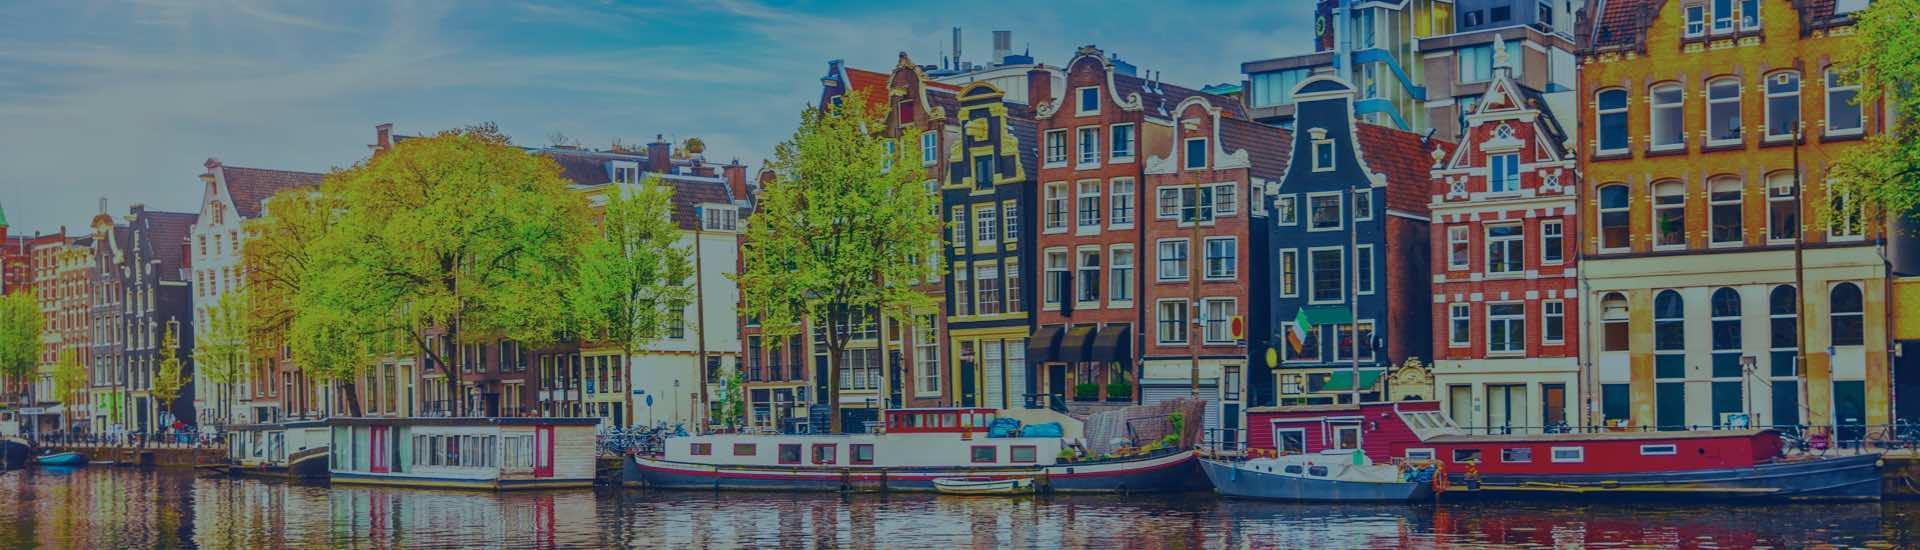 ابحث عن الفنادق في امستردام